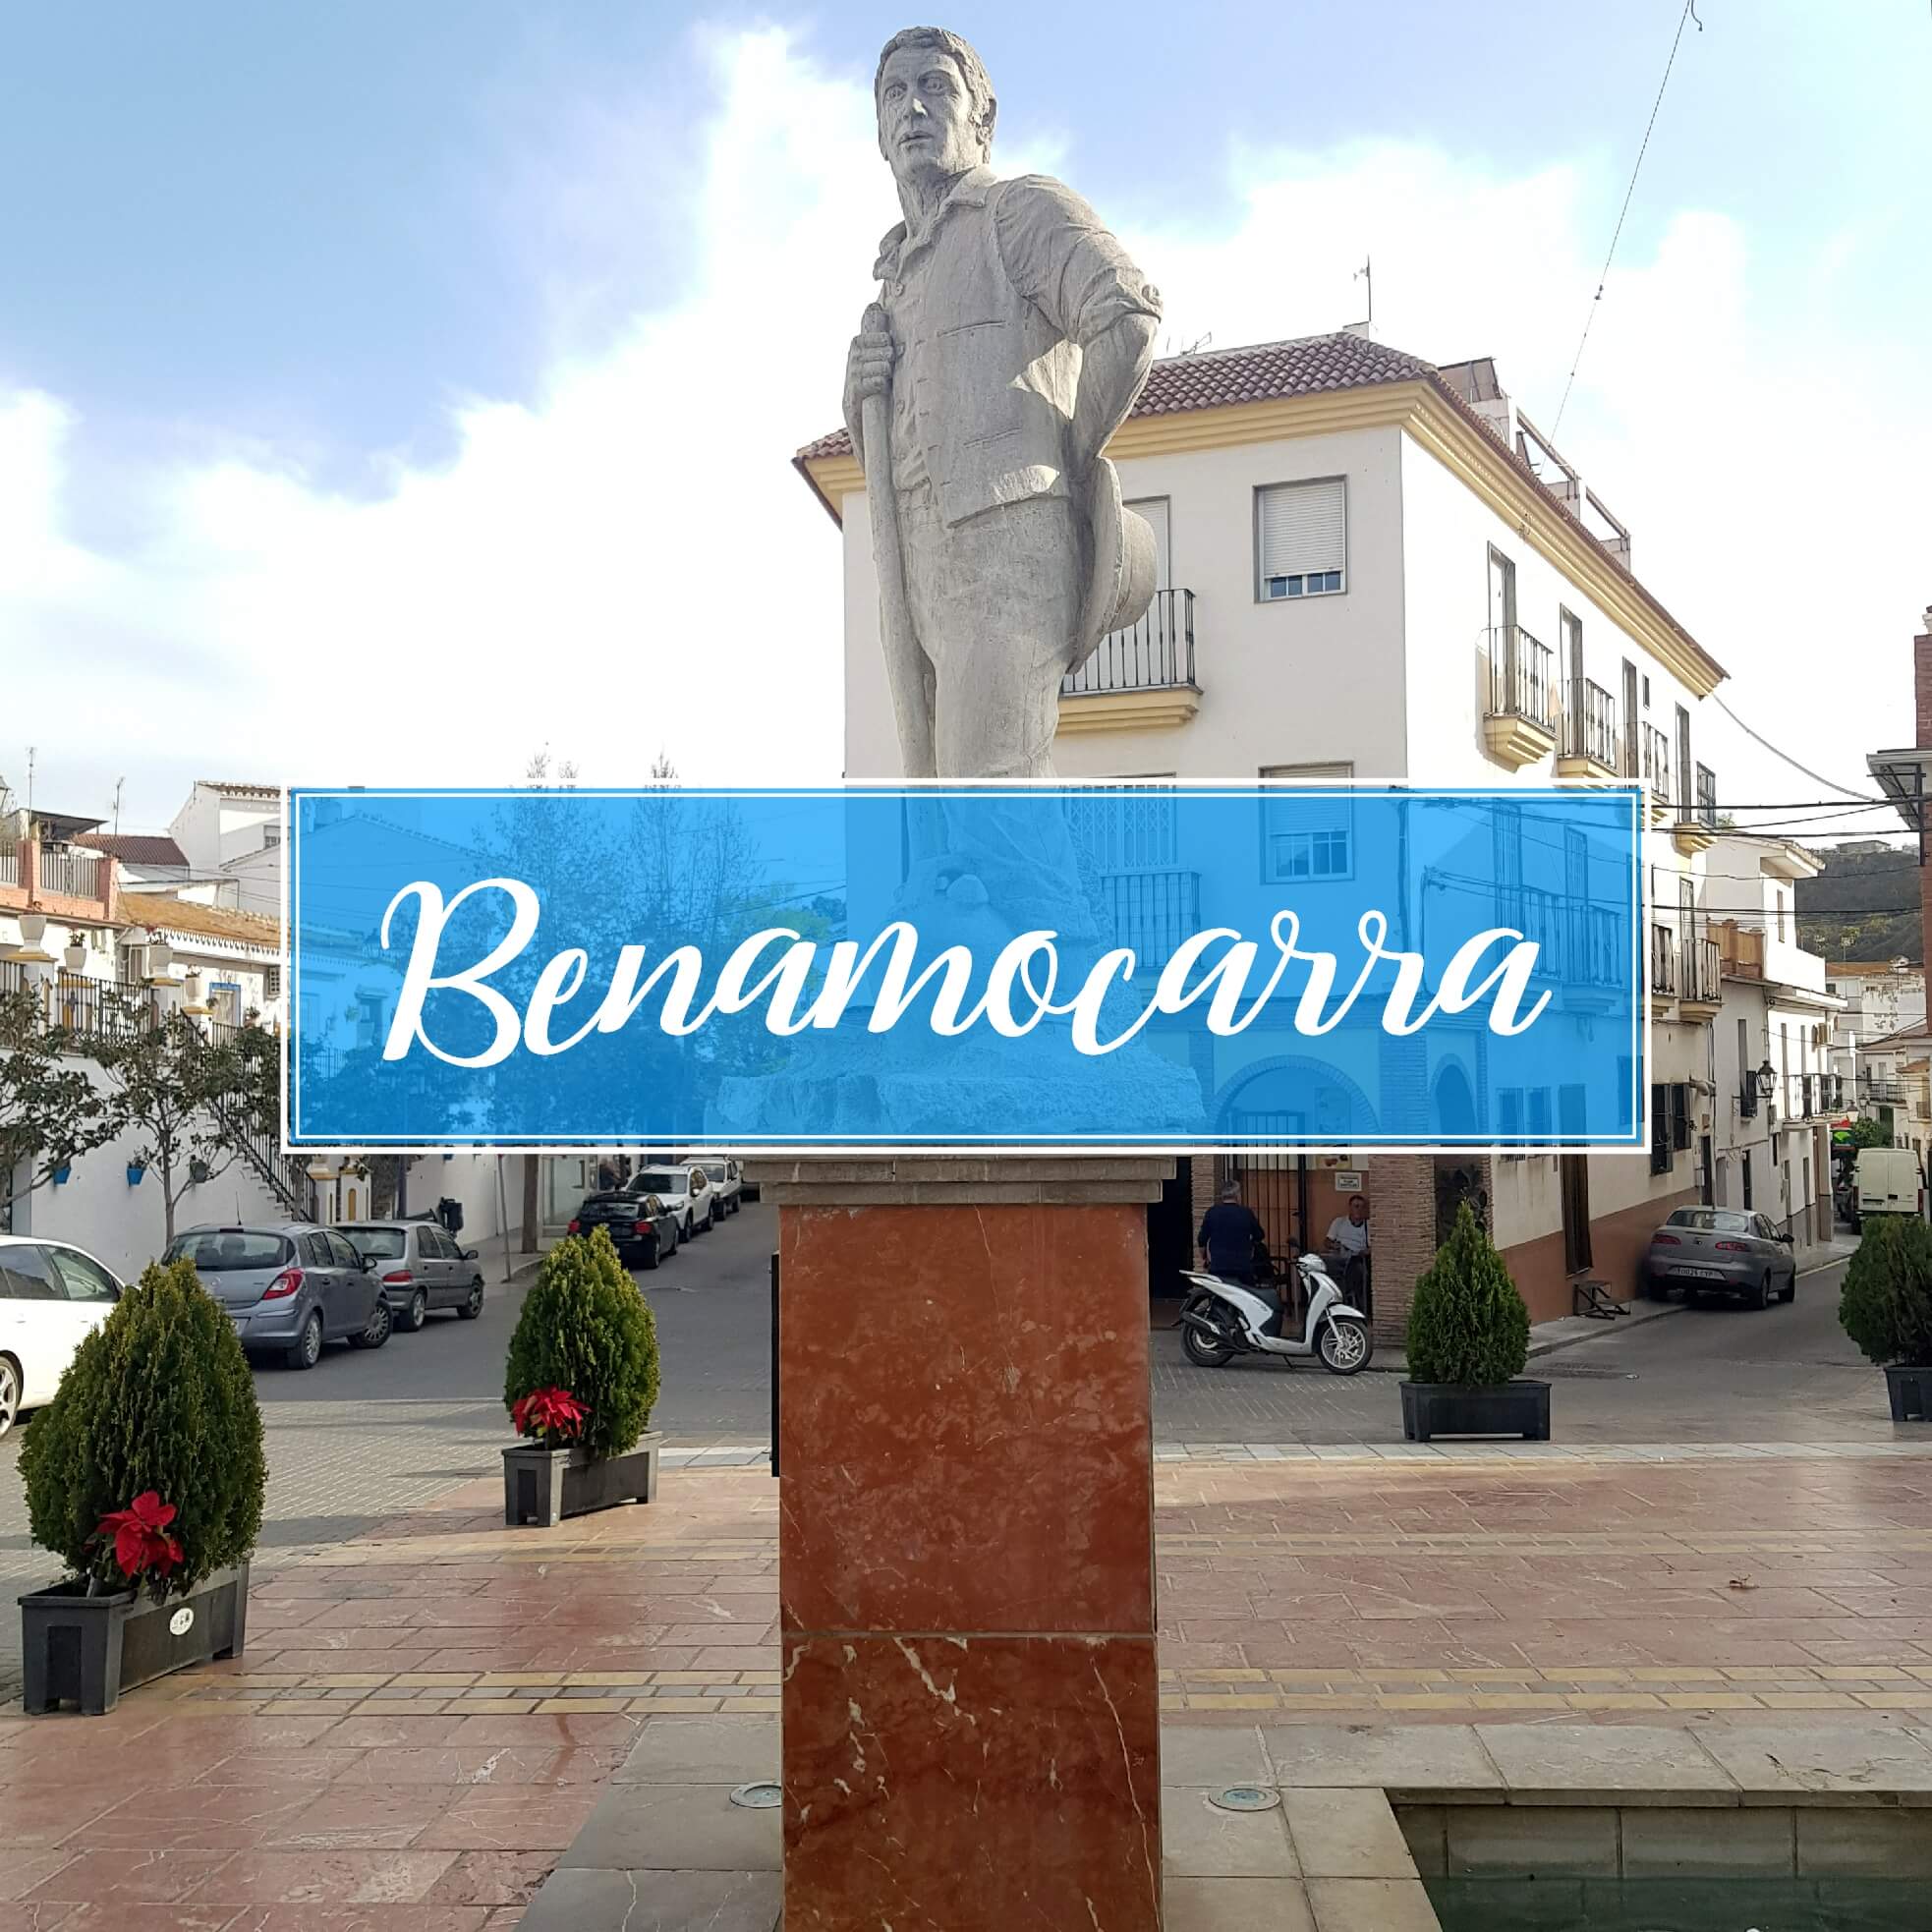 Benamocarra Pueblo Malaga